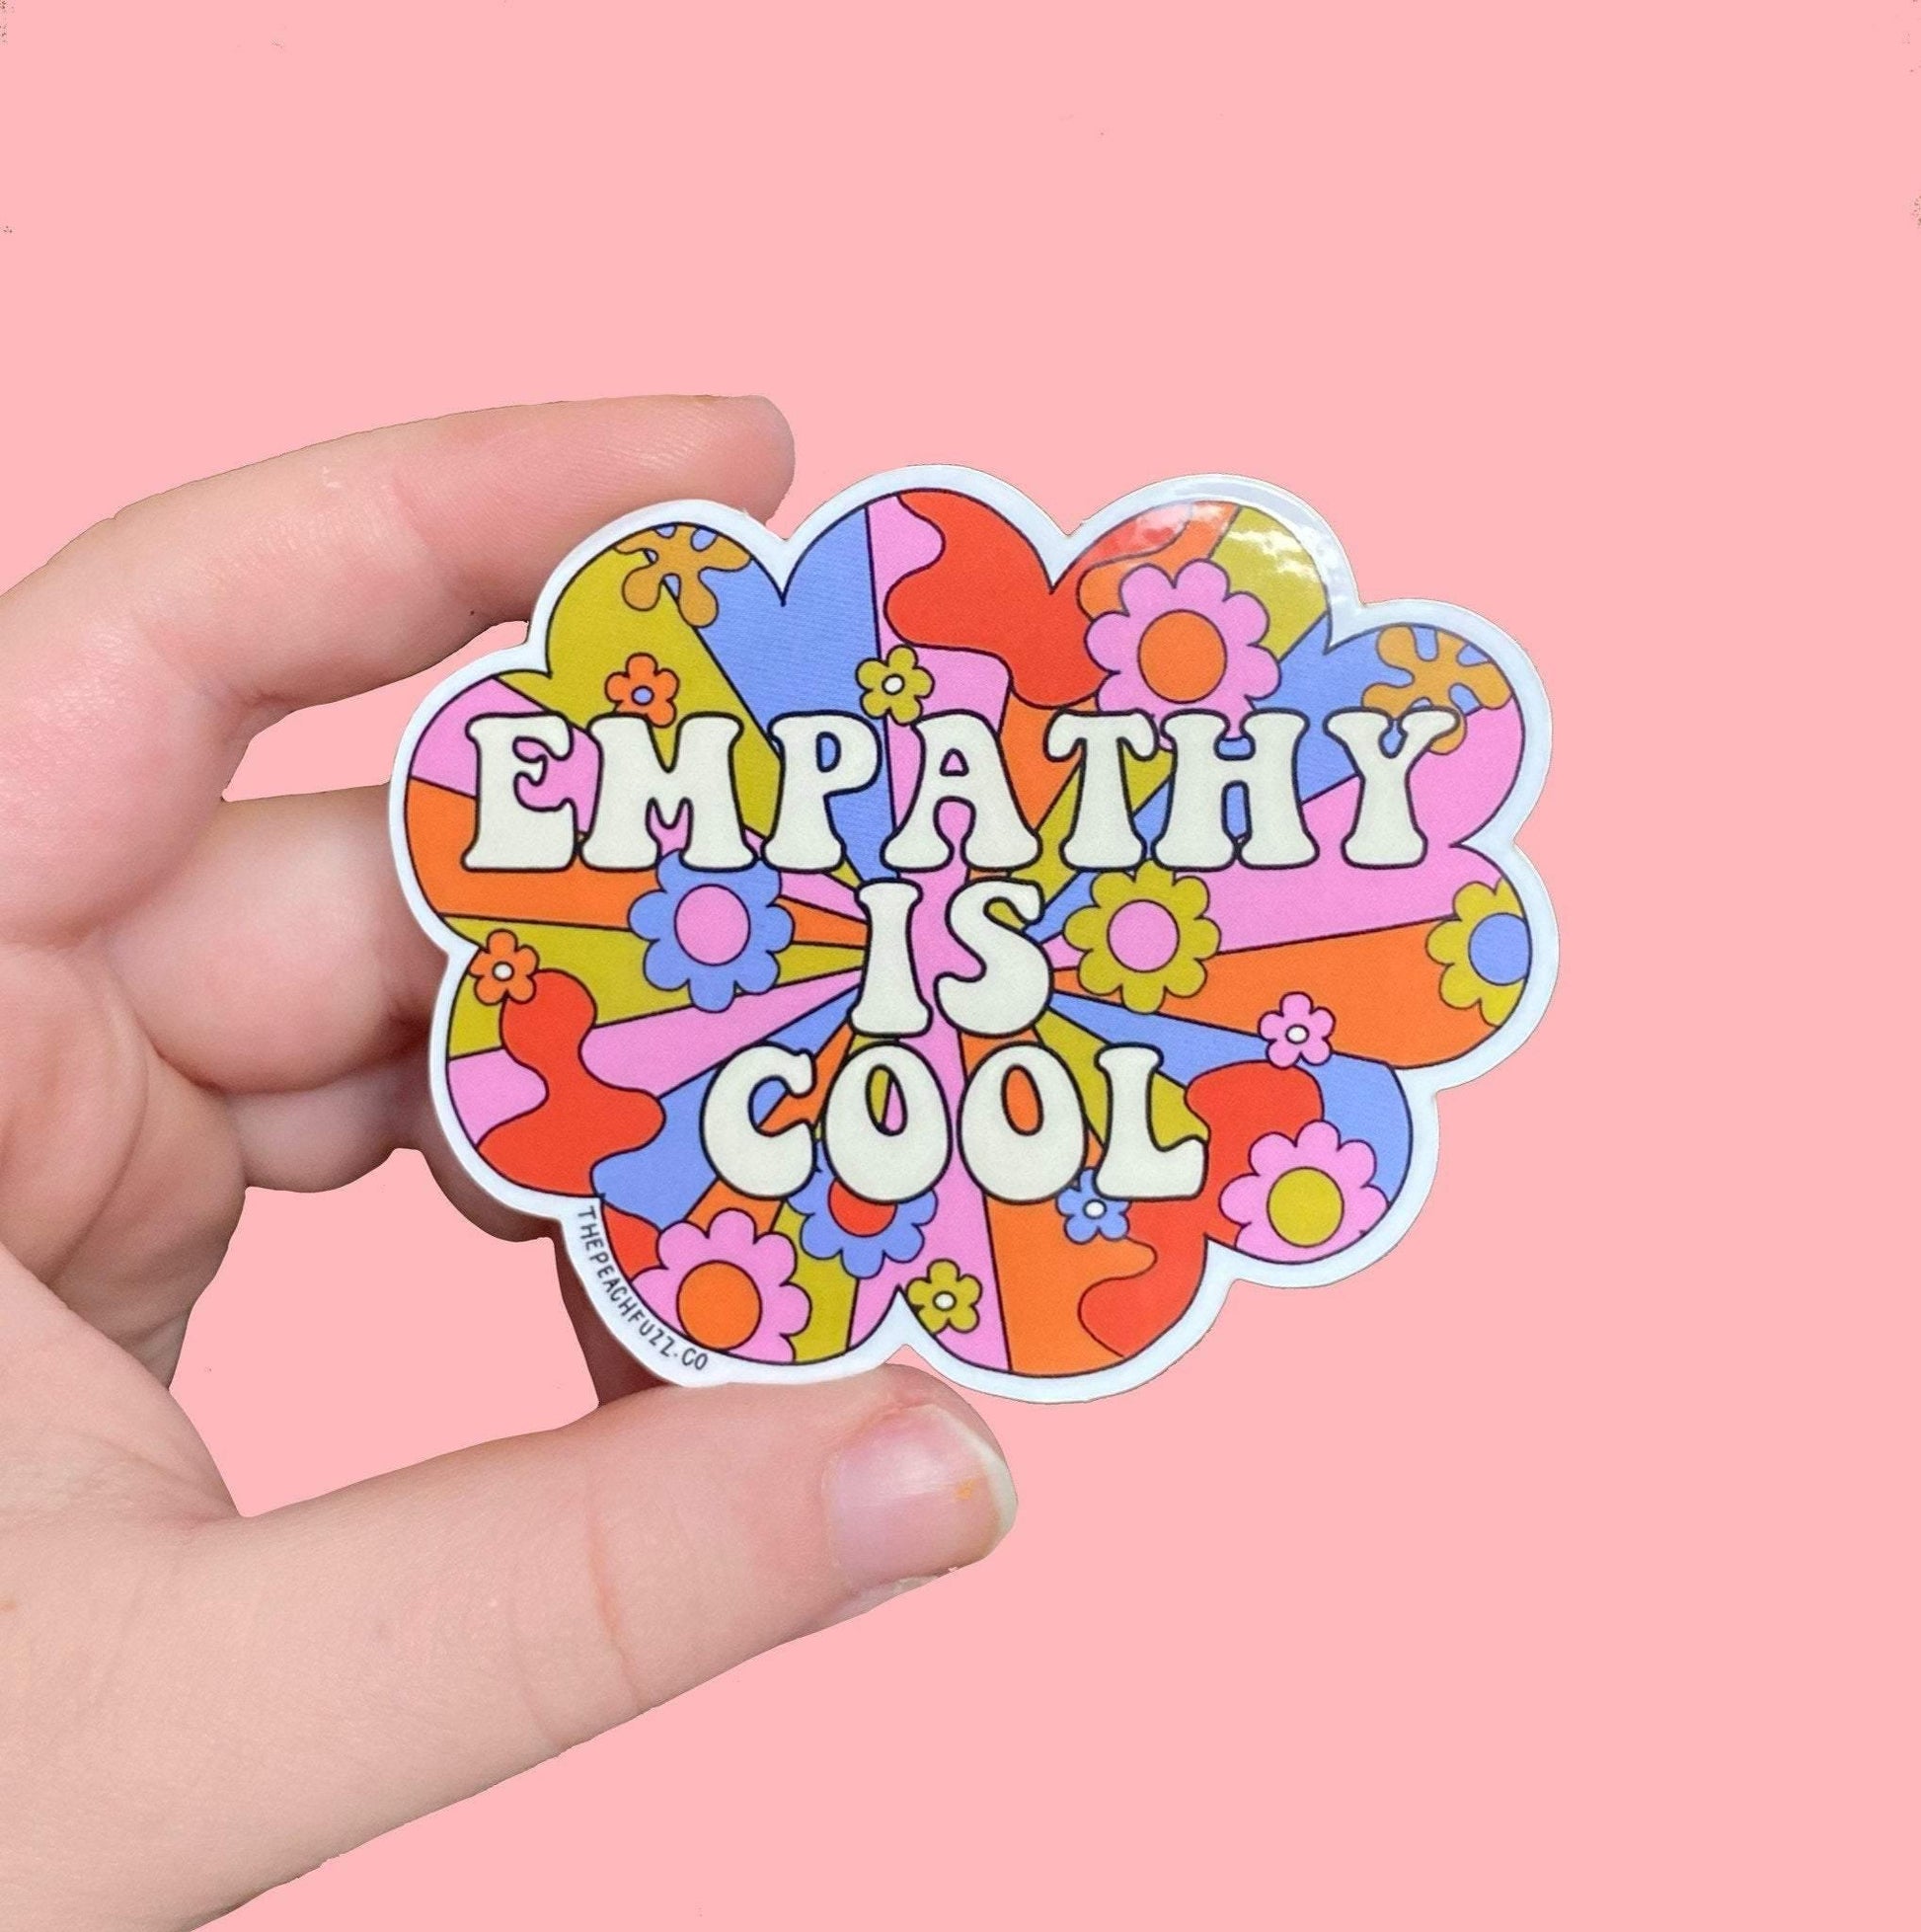 Empathy Definition | Sticker